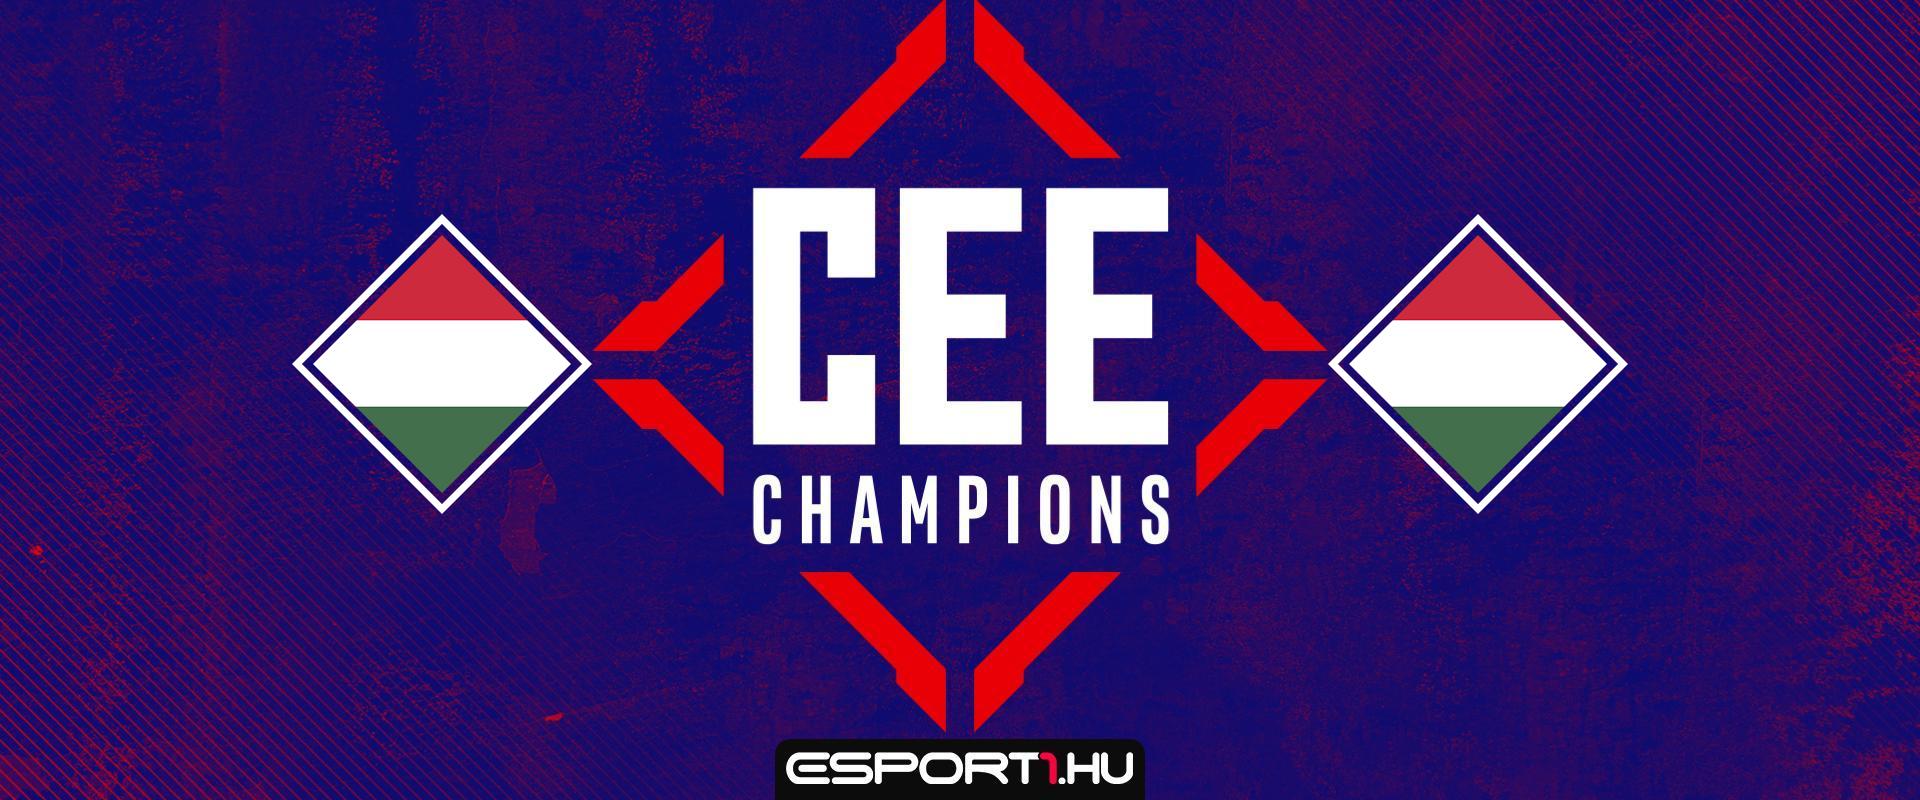 Ők nyolcan játszhatnak a CEE Champions 2022 zárt magyar selejtezőjében